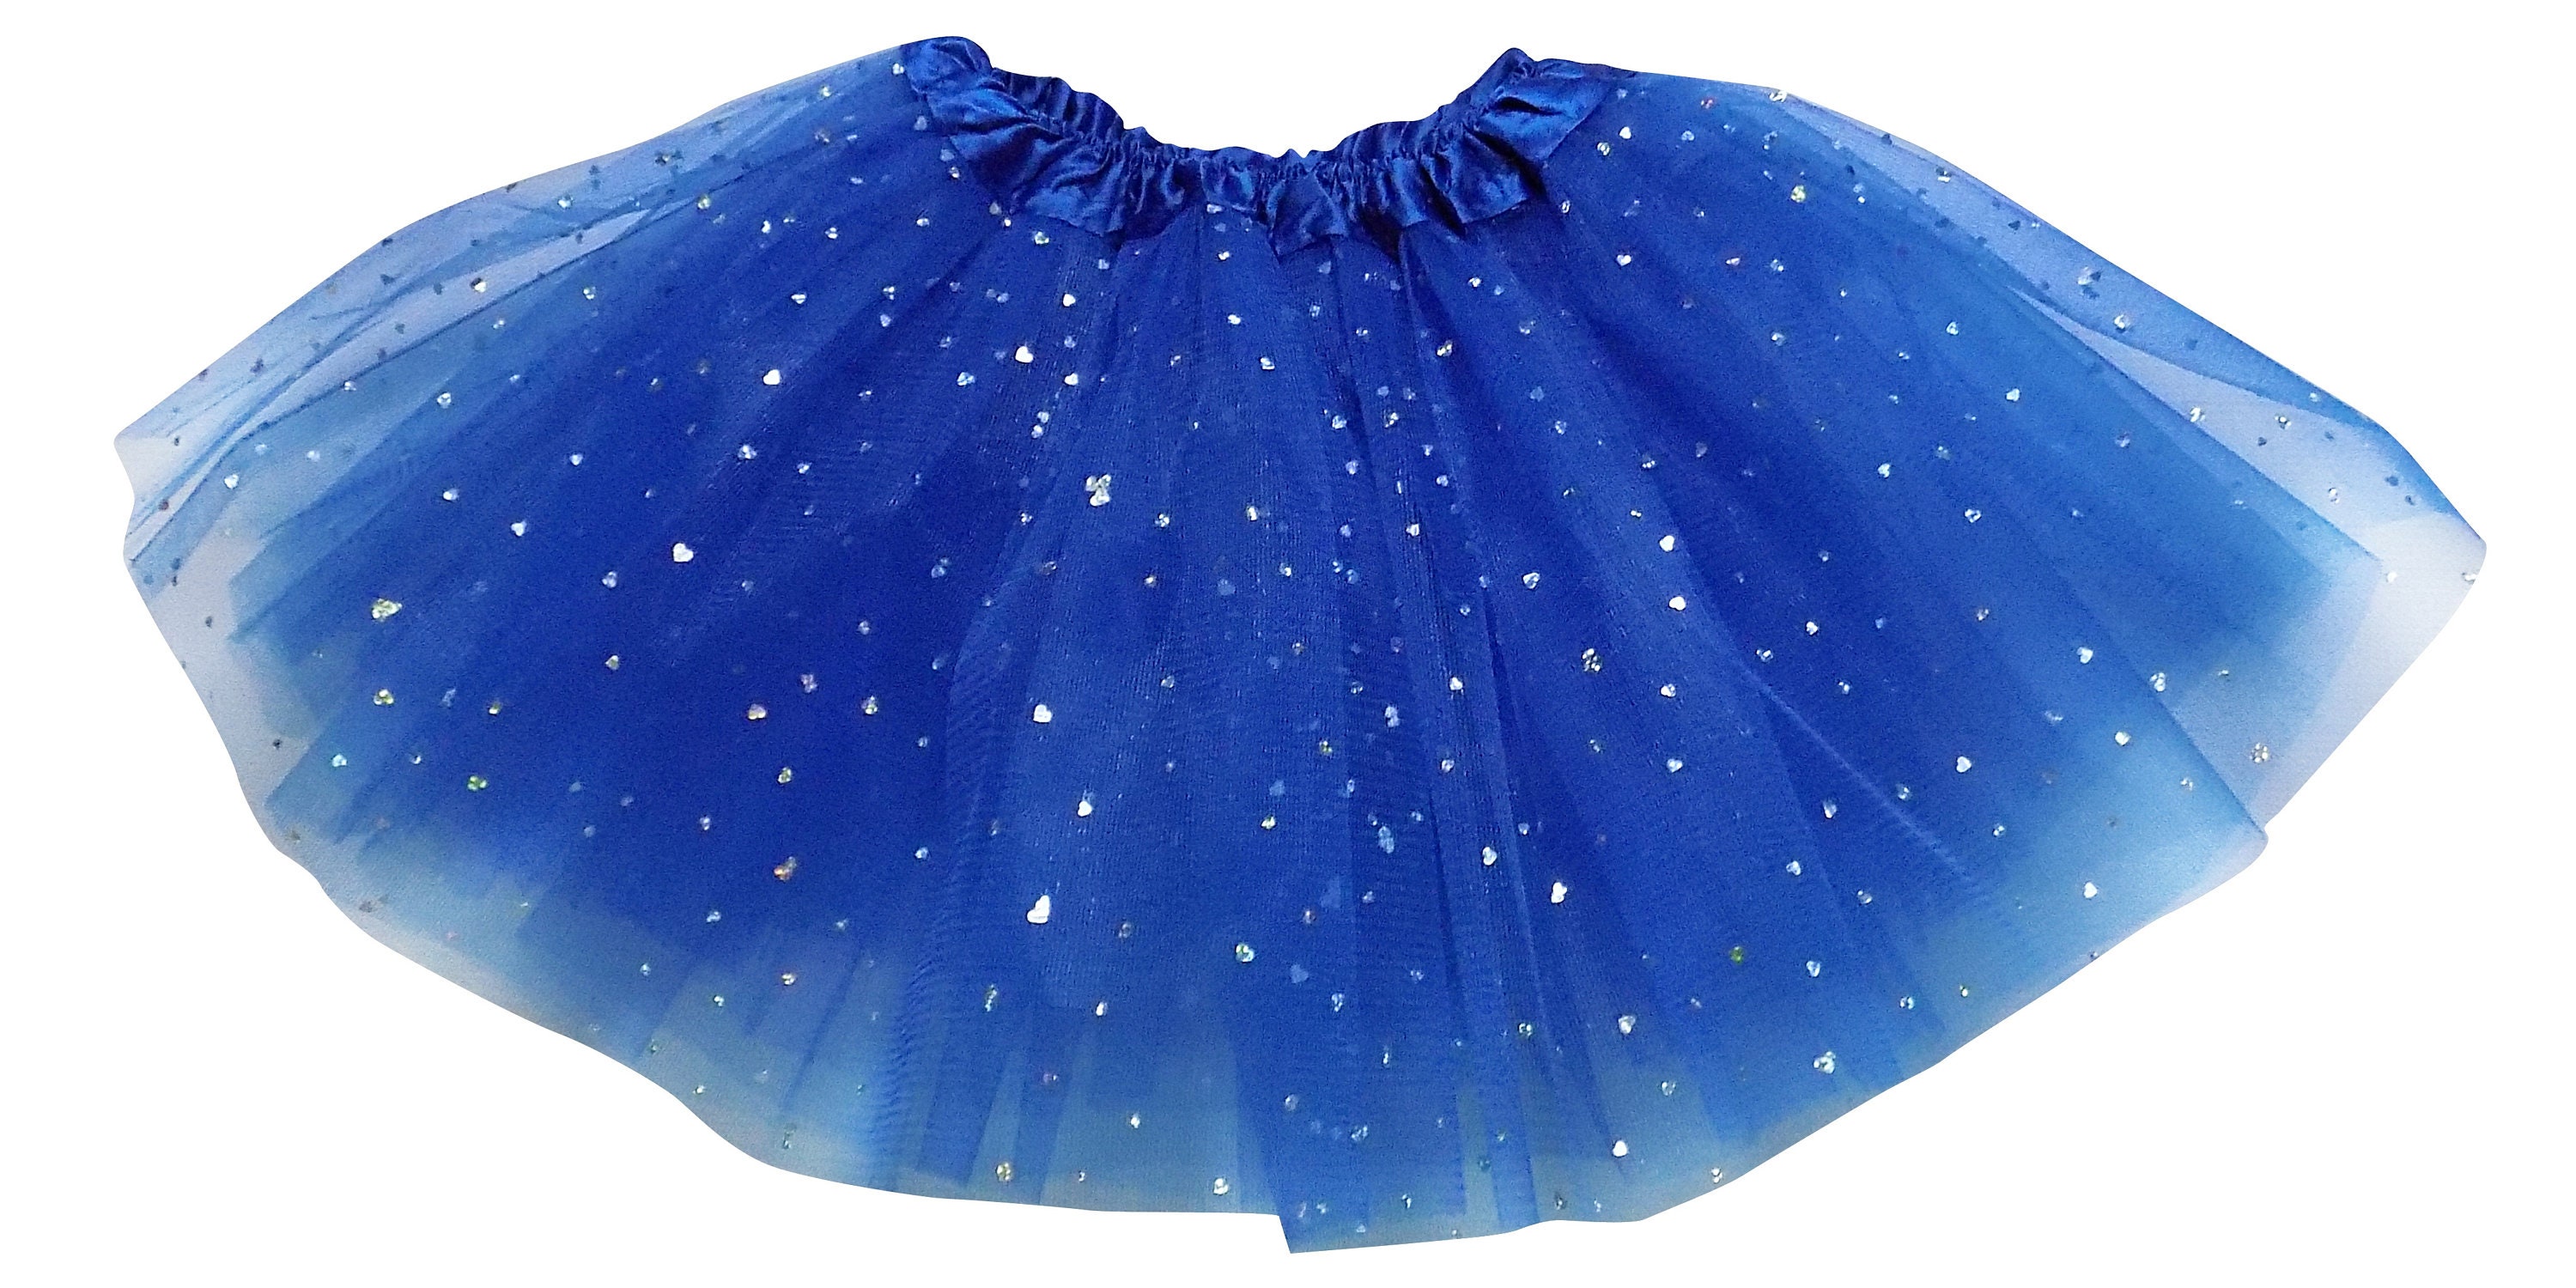 Kleding Meisjeskleding Rokken birthday tutu Royal Blue Glitter Tutu Tutu Star Tutu Royal Blue Tutu daughter gift tutus for girls Royal Blue Sparkle Tutu 